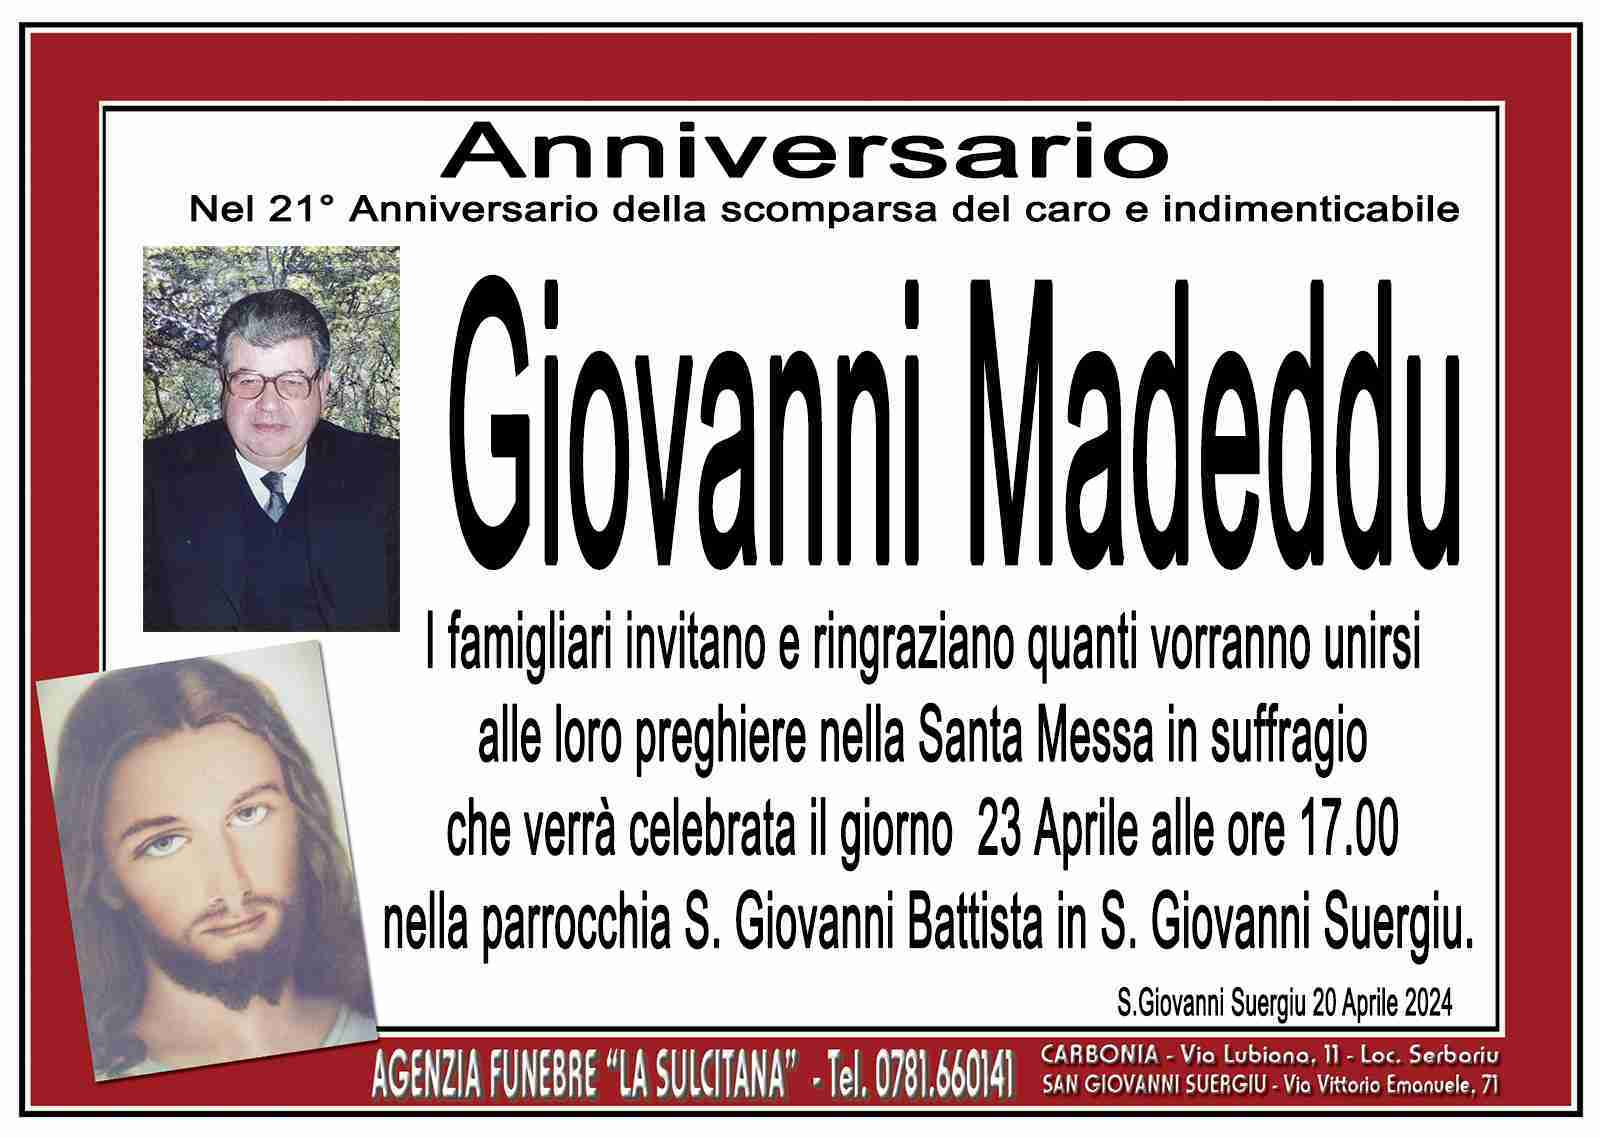 Giovanni Madeddu